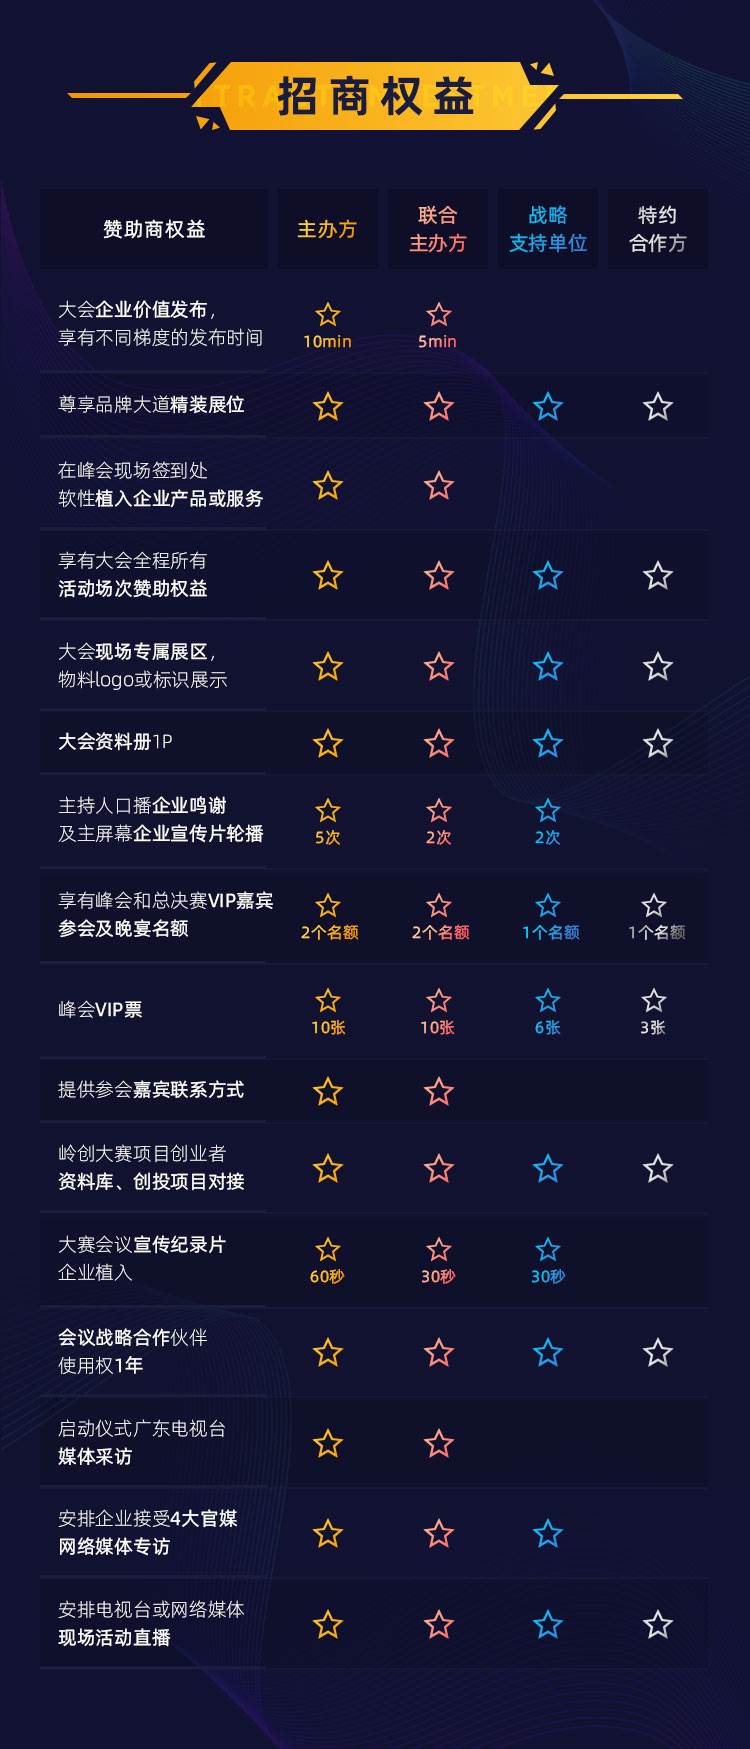 2020中国产业峰会_售票详情v2.1_07.jpg